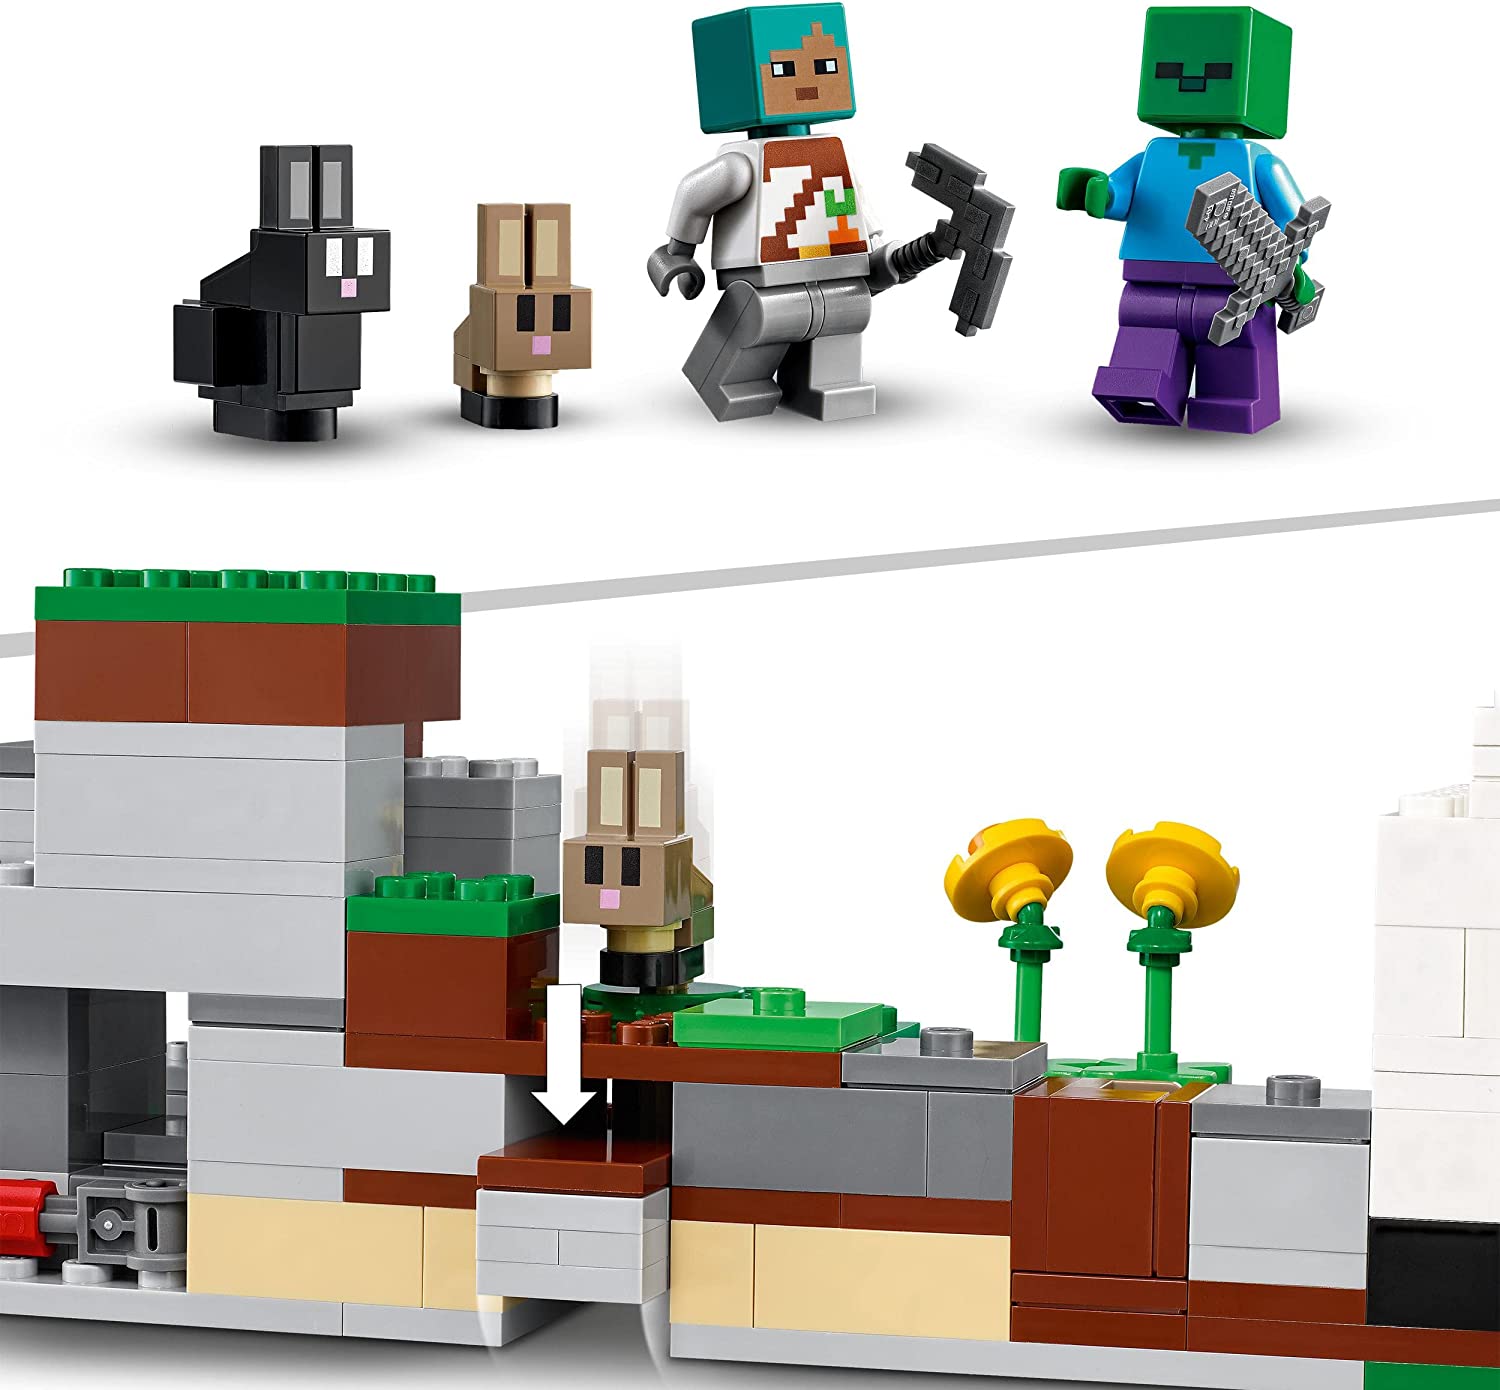 LEGO 21181 Minecraft Kaninranchen, Leksak för Barn 8+ År med Djurfigurer